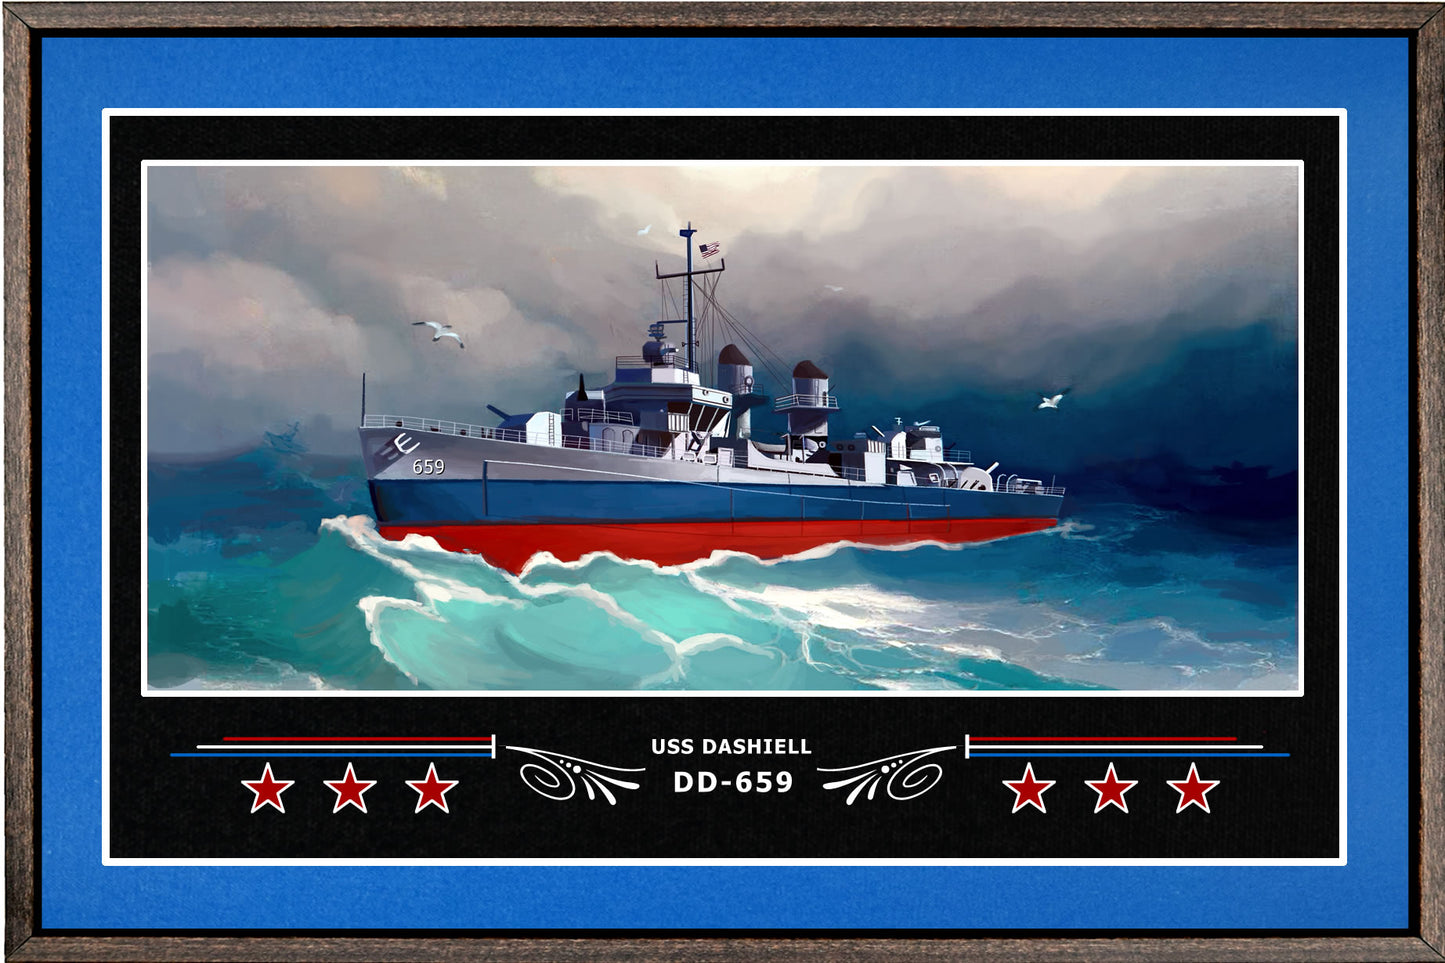 USS DASHIELL DD 659 BOX FRAMED CANVAS ART BLUE